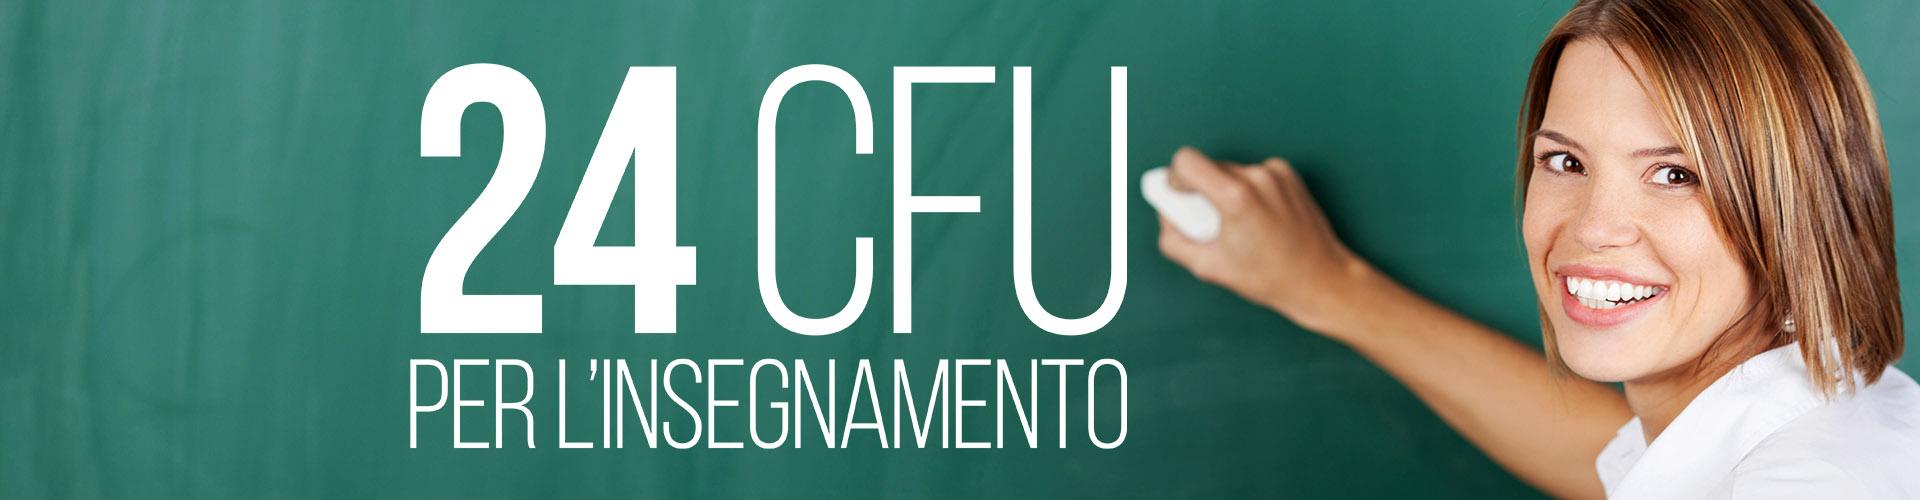 Concorso docenti 2018 non abilitati: 24 CFU, elenco Miur Università con percorsi formativi